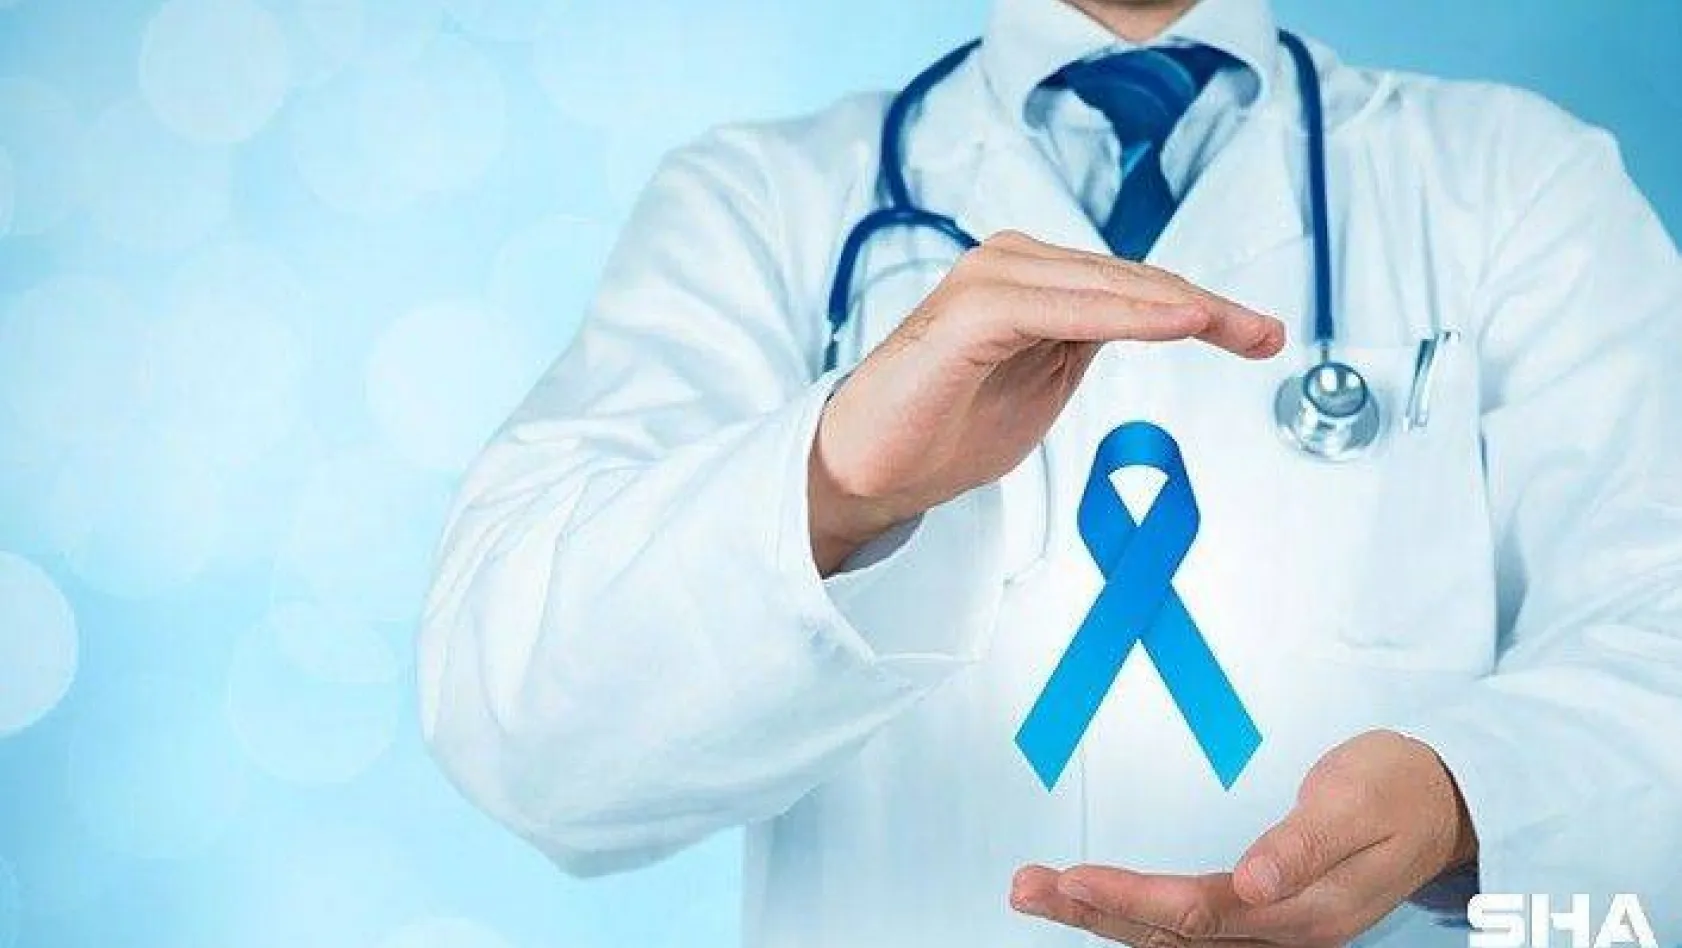 Prostat kanserinde erken teşhis hayat kurtarıyor